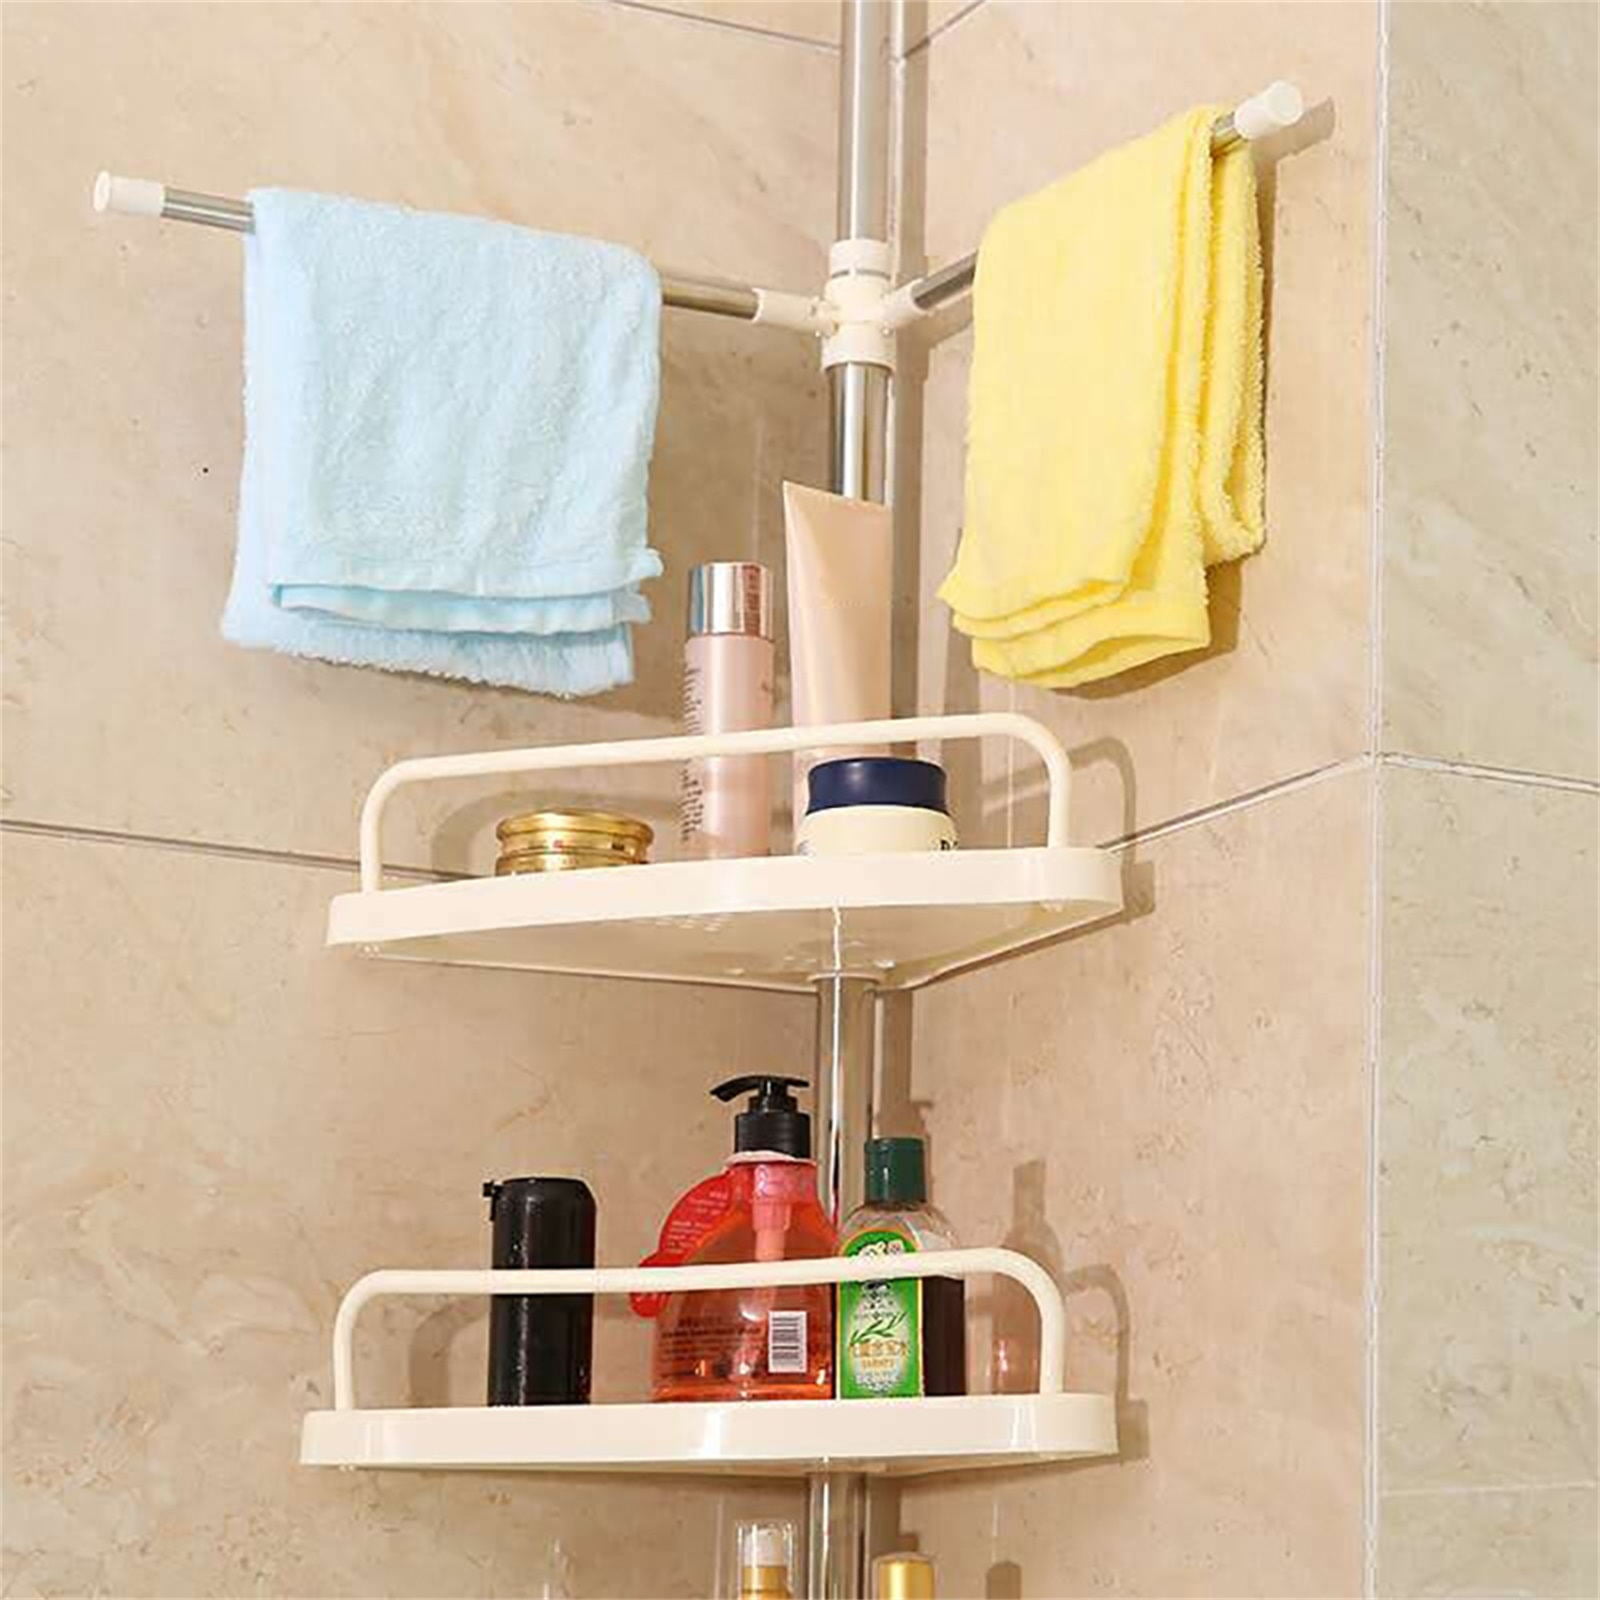  Linksandt Shower Caddy, 4 Pack Shower Shelves